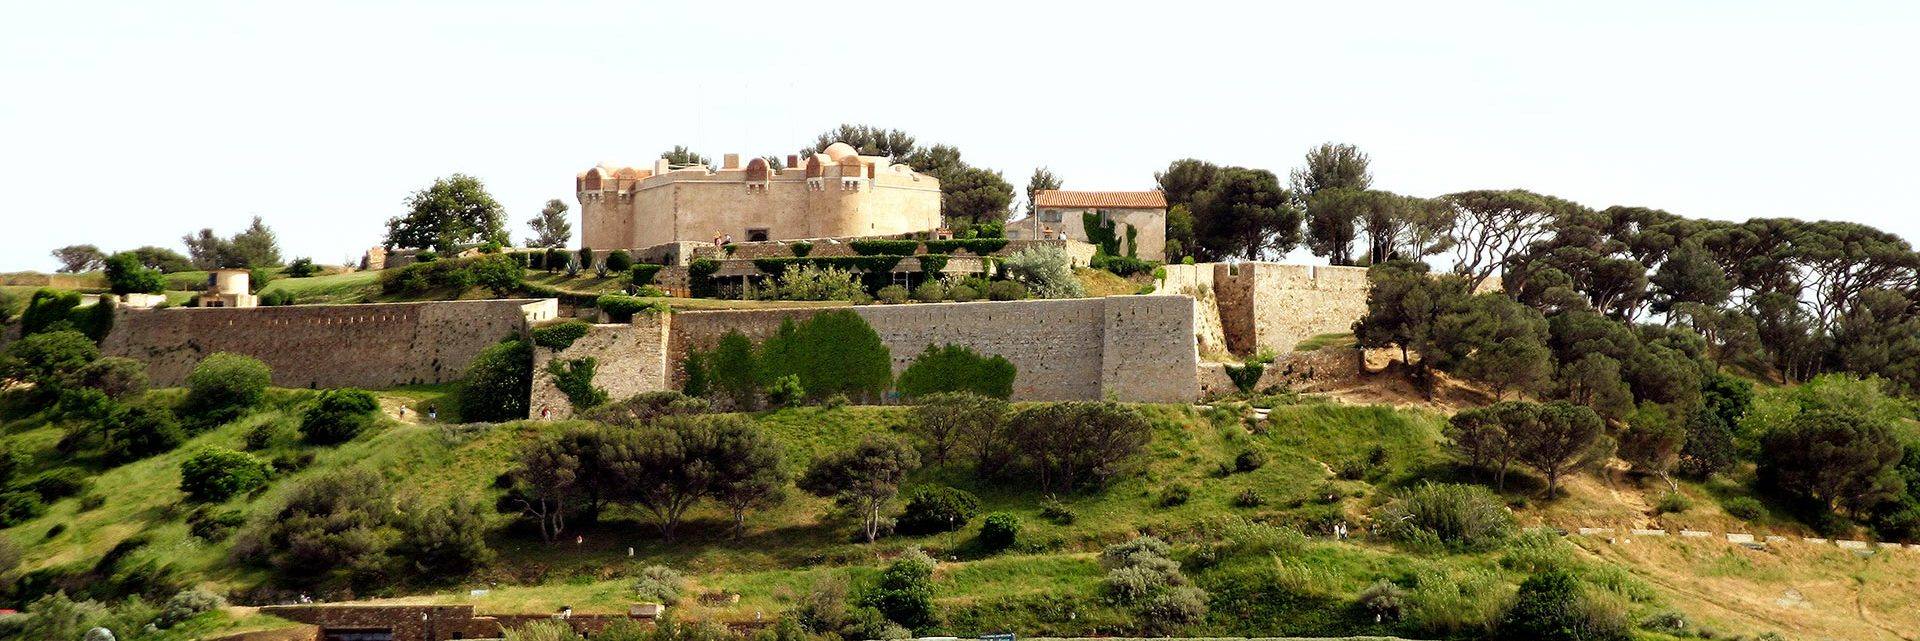 Citadelle of Saint Tropez